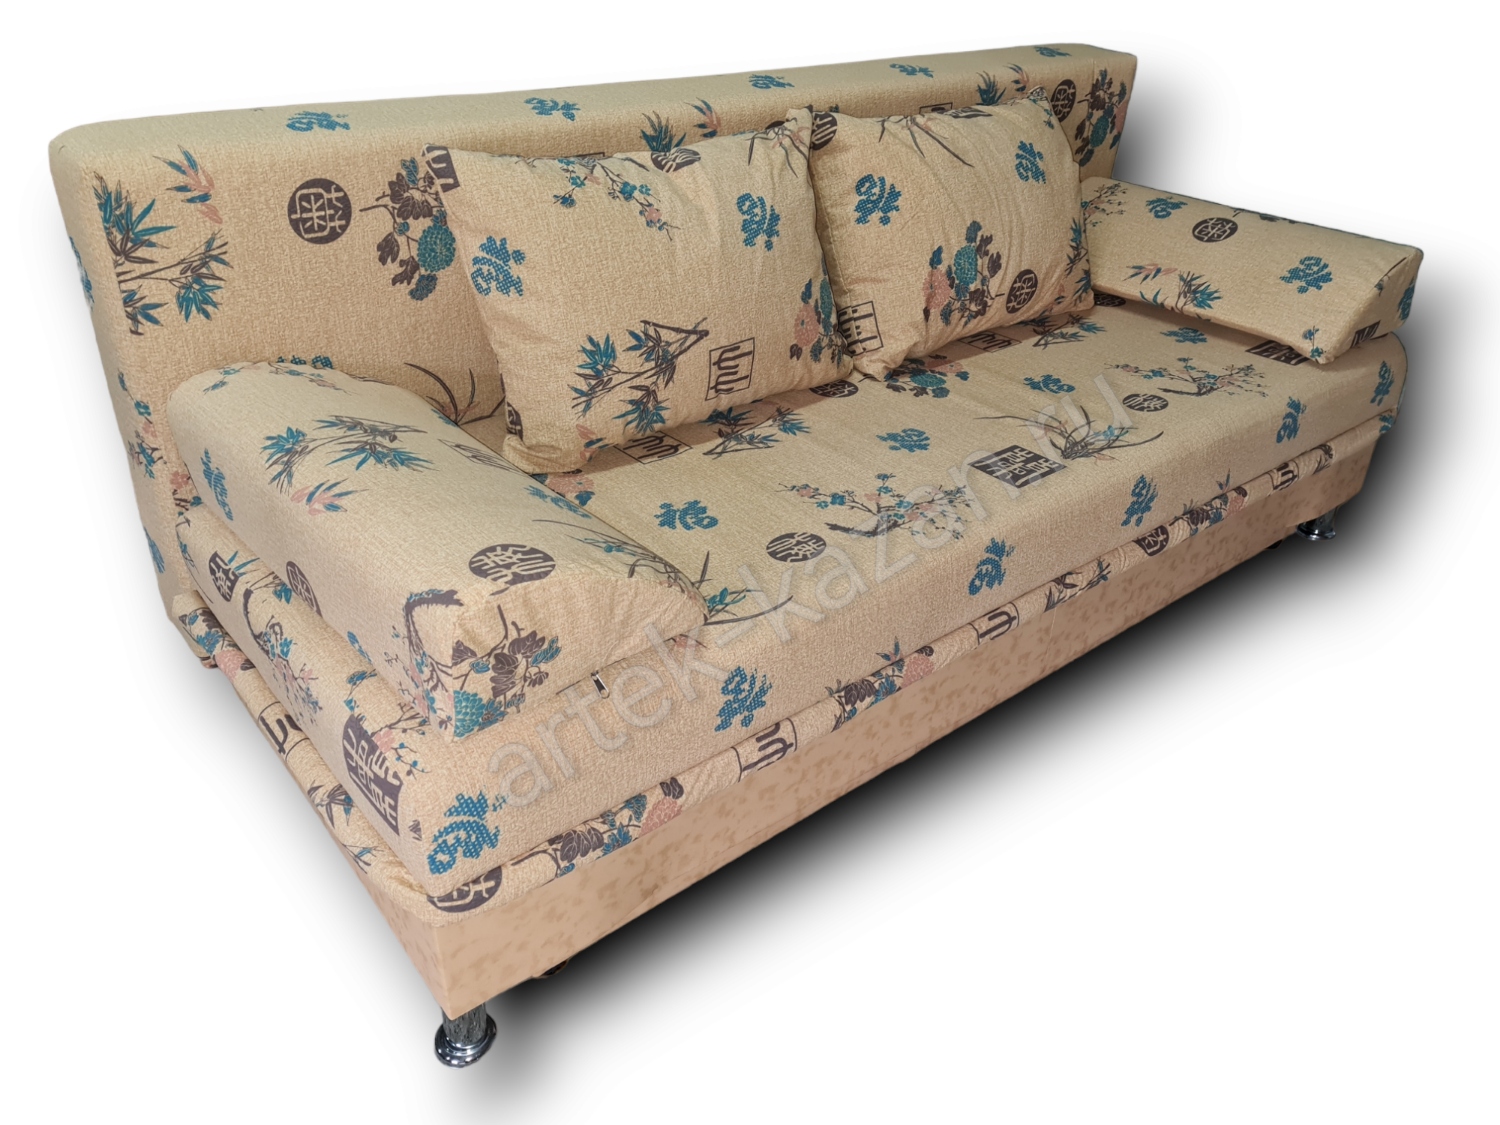 диван еврокнижка Эконом фото № 124. Купить недорогой диван по низкой цене от производителя можно у нас.